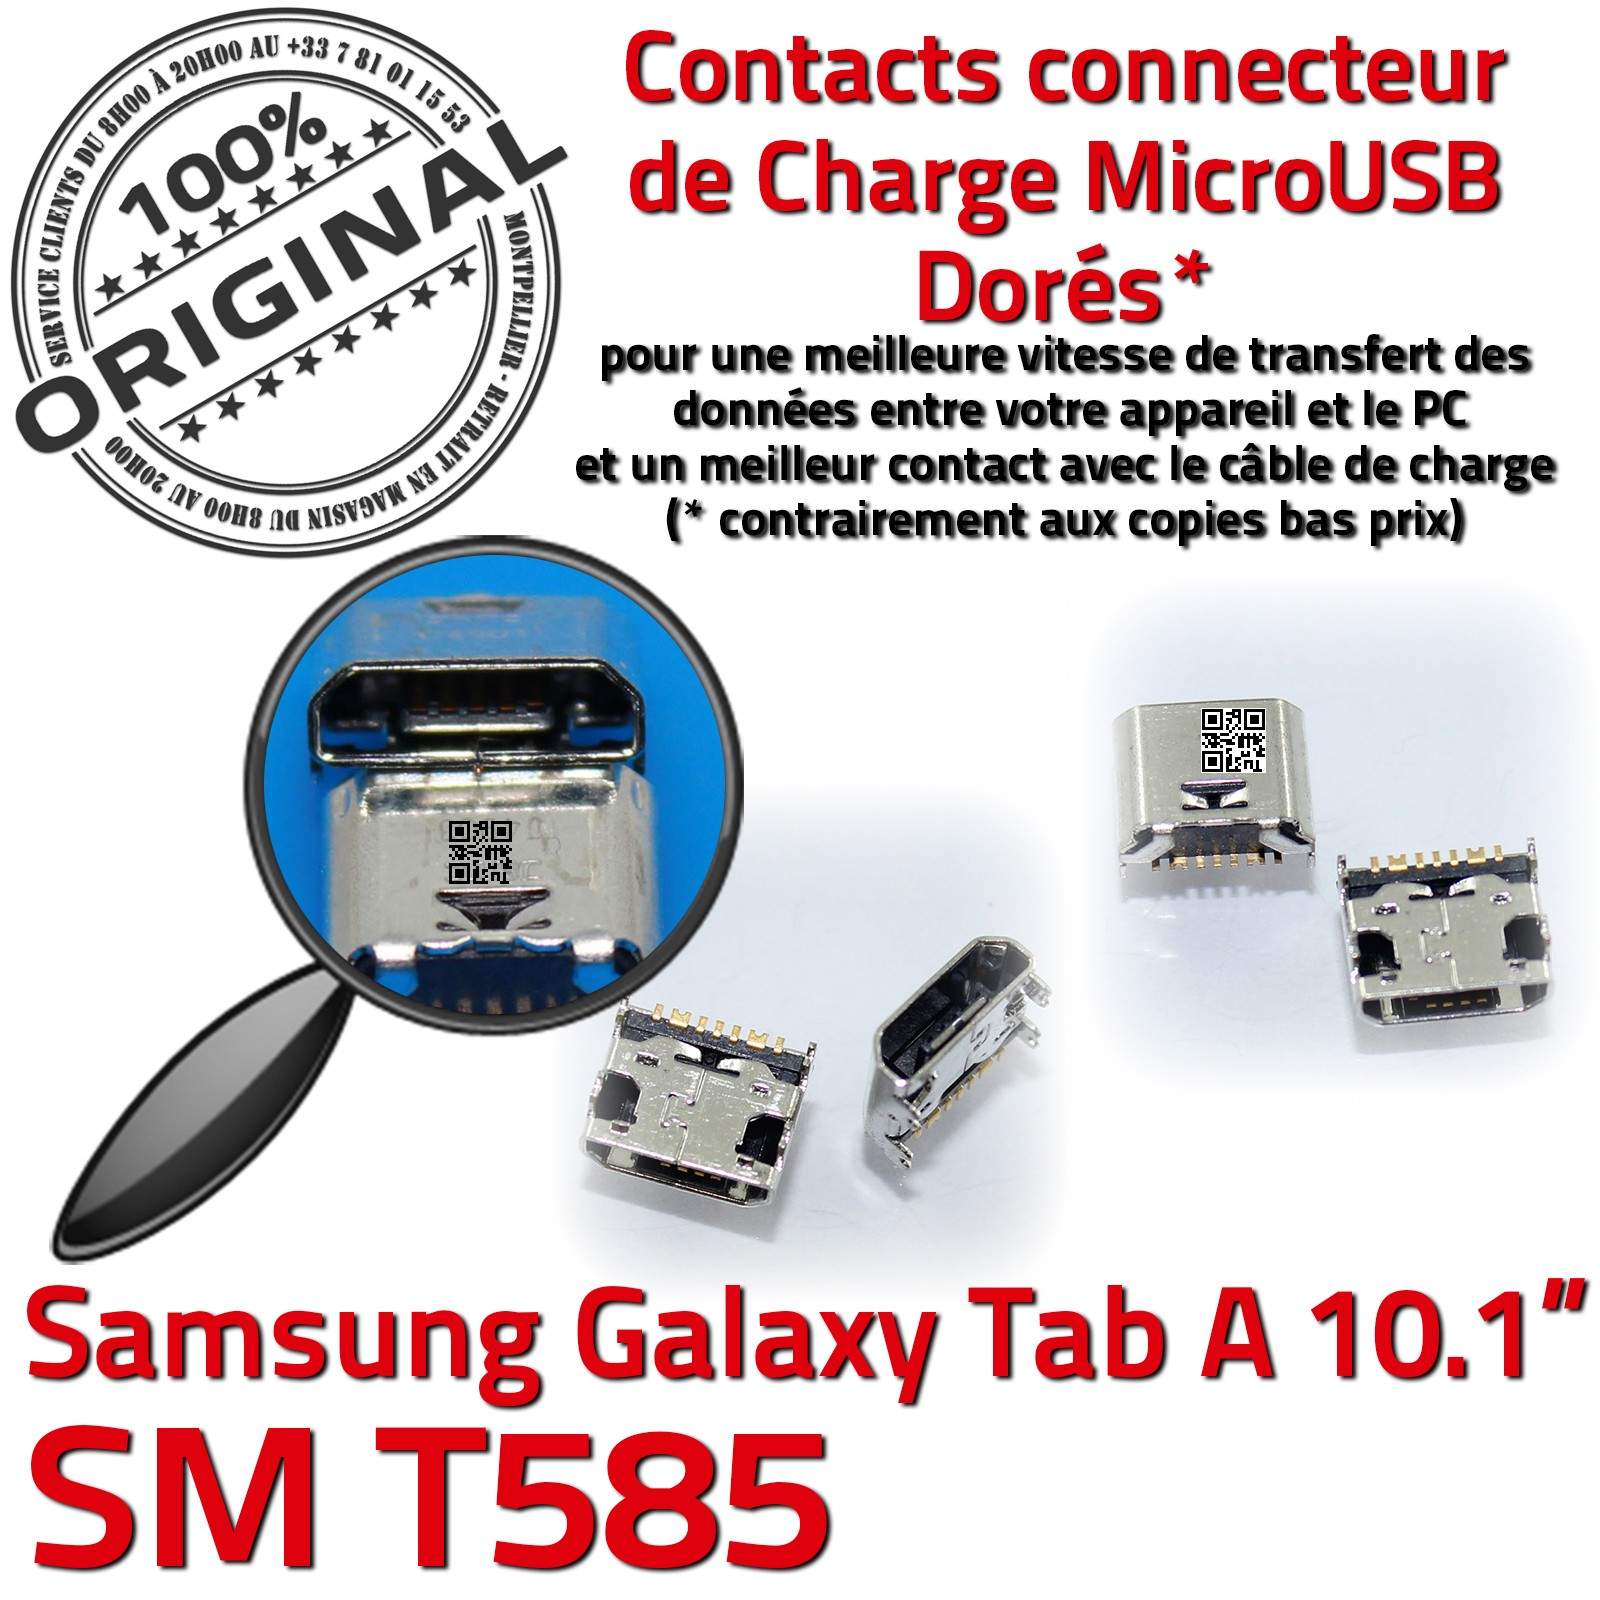 ORIGINAL Samsung Galaxy TAB A SM T585 Connecteur de charge à souder Micro USB Pins Dorés Dock Prise Connector Chargeur 10.1 inch